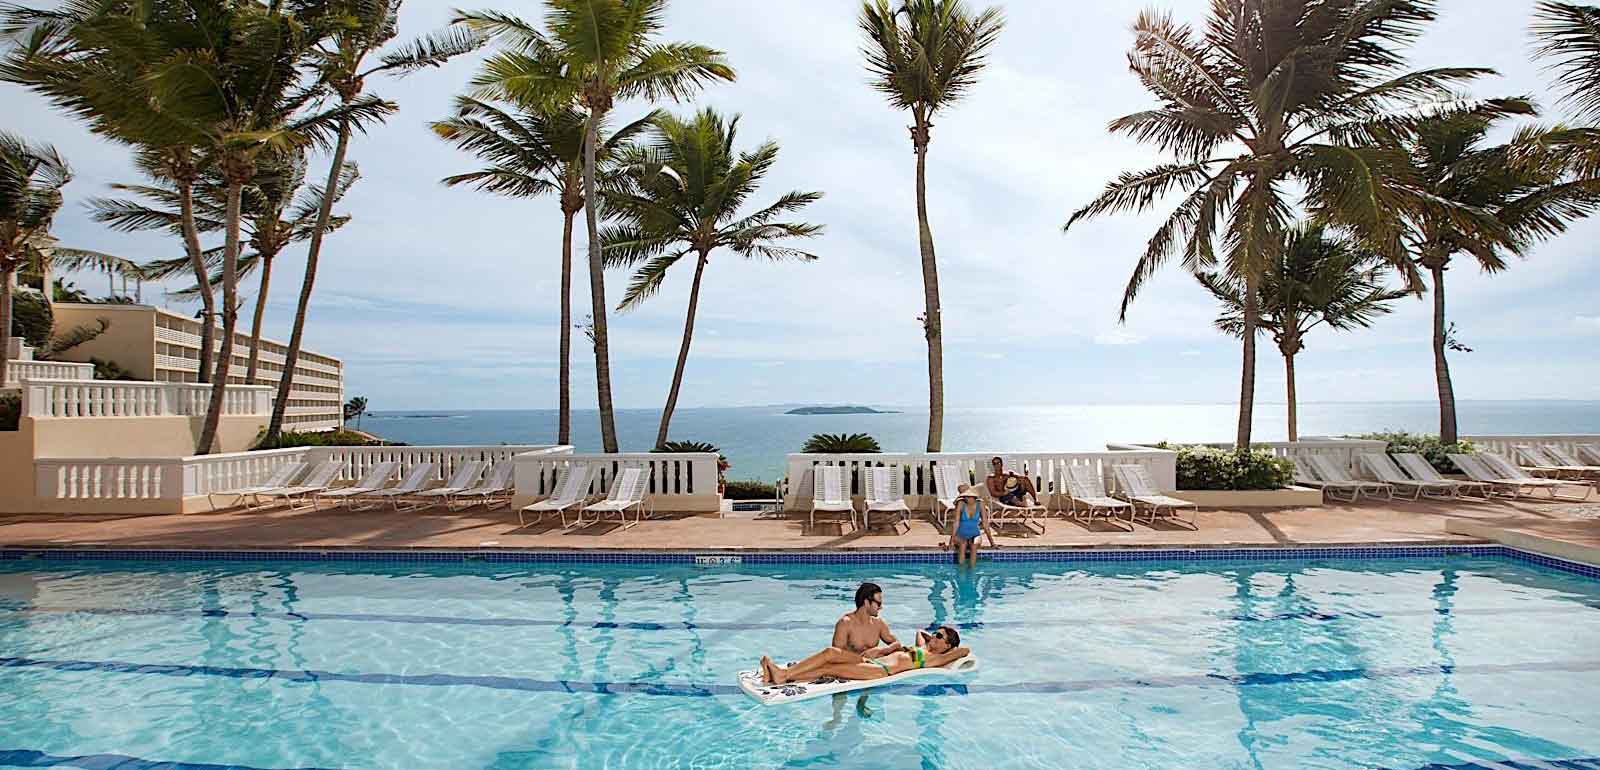 El Conquistador Resort & Spa | Puerto Rico, USA